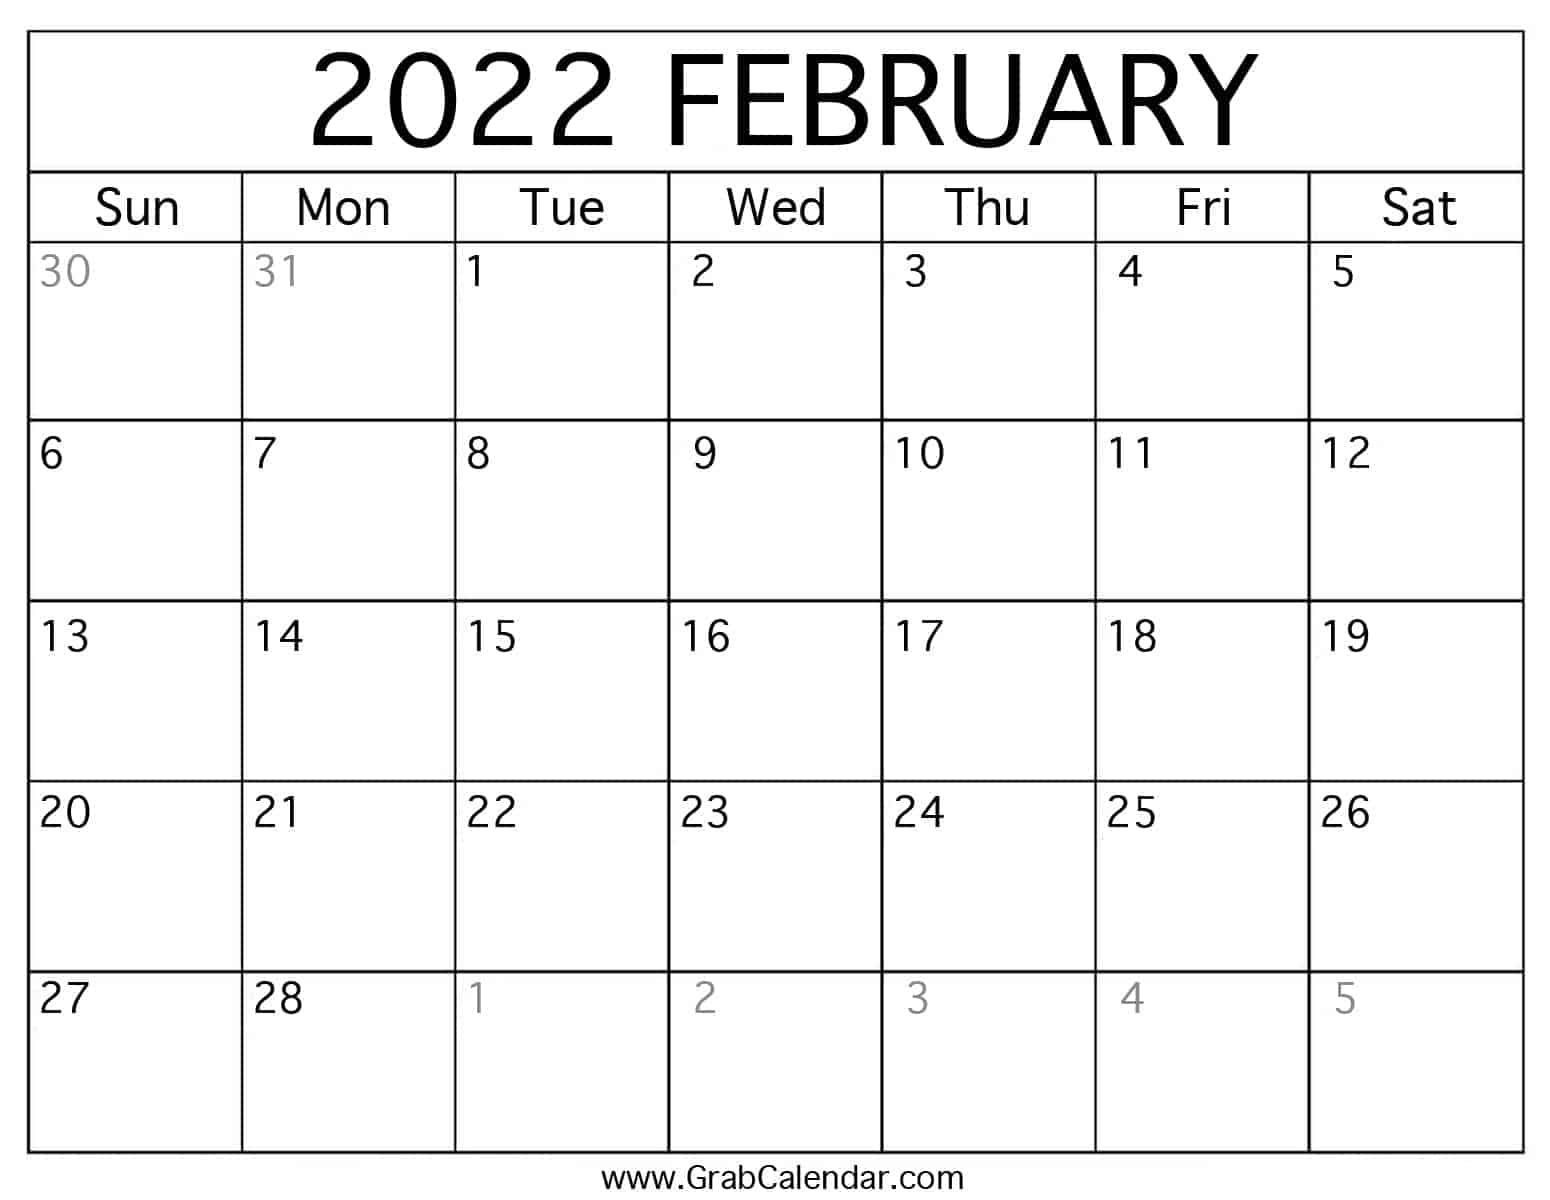 February 2022 Calendar Pdf Printable February 2022 Calendar